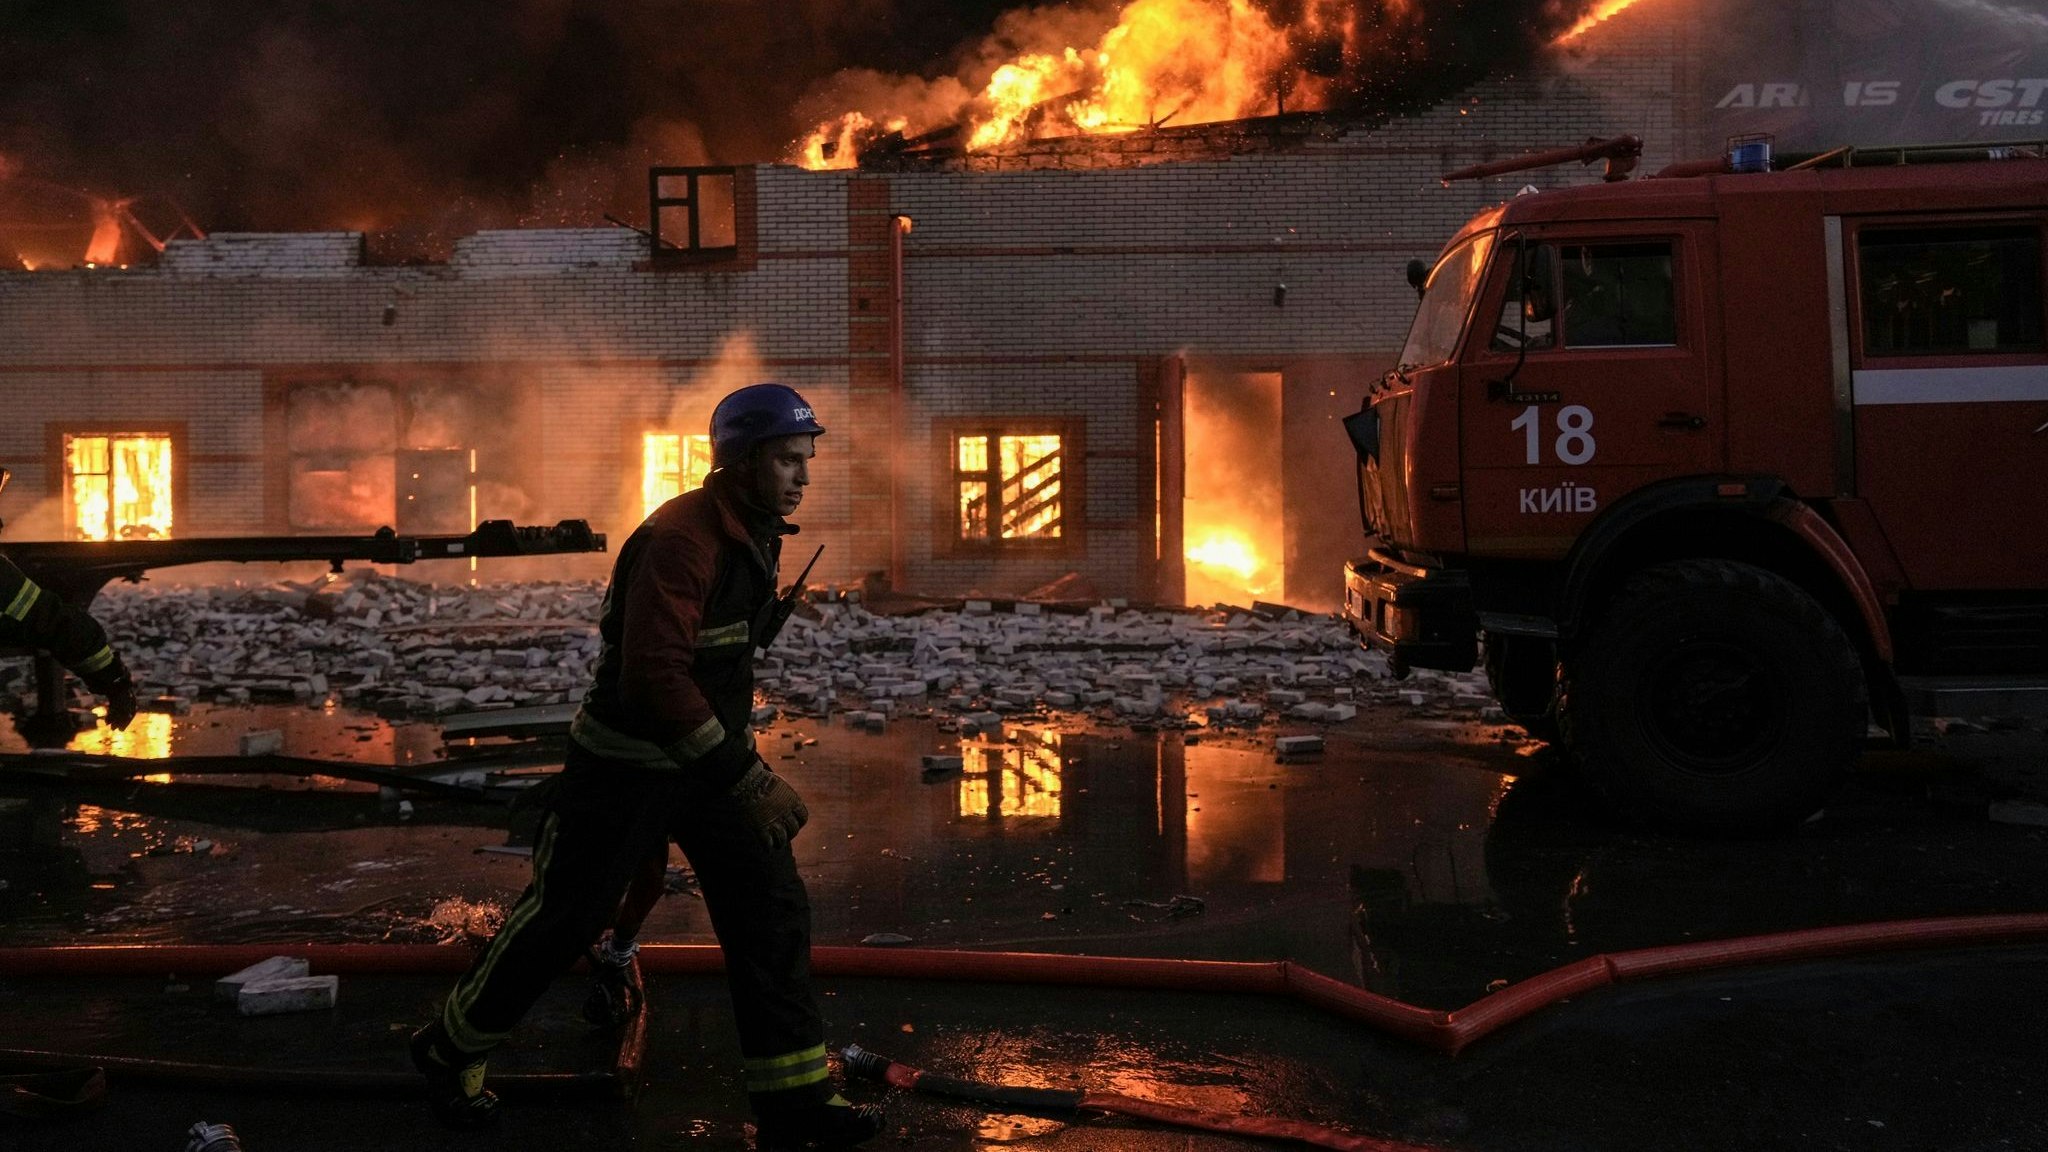 Ukrainische Feuerwehrleute löschen einen Brand in einem Lagerhaus nach einem Bombenanschlag. Foto: dpa/Ghirda